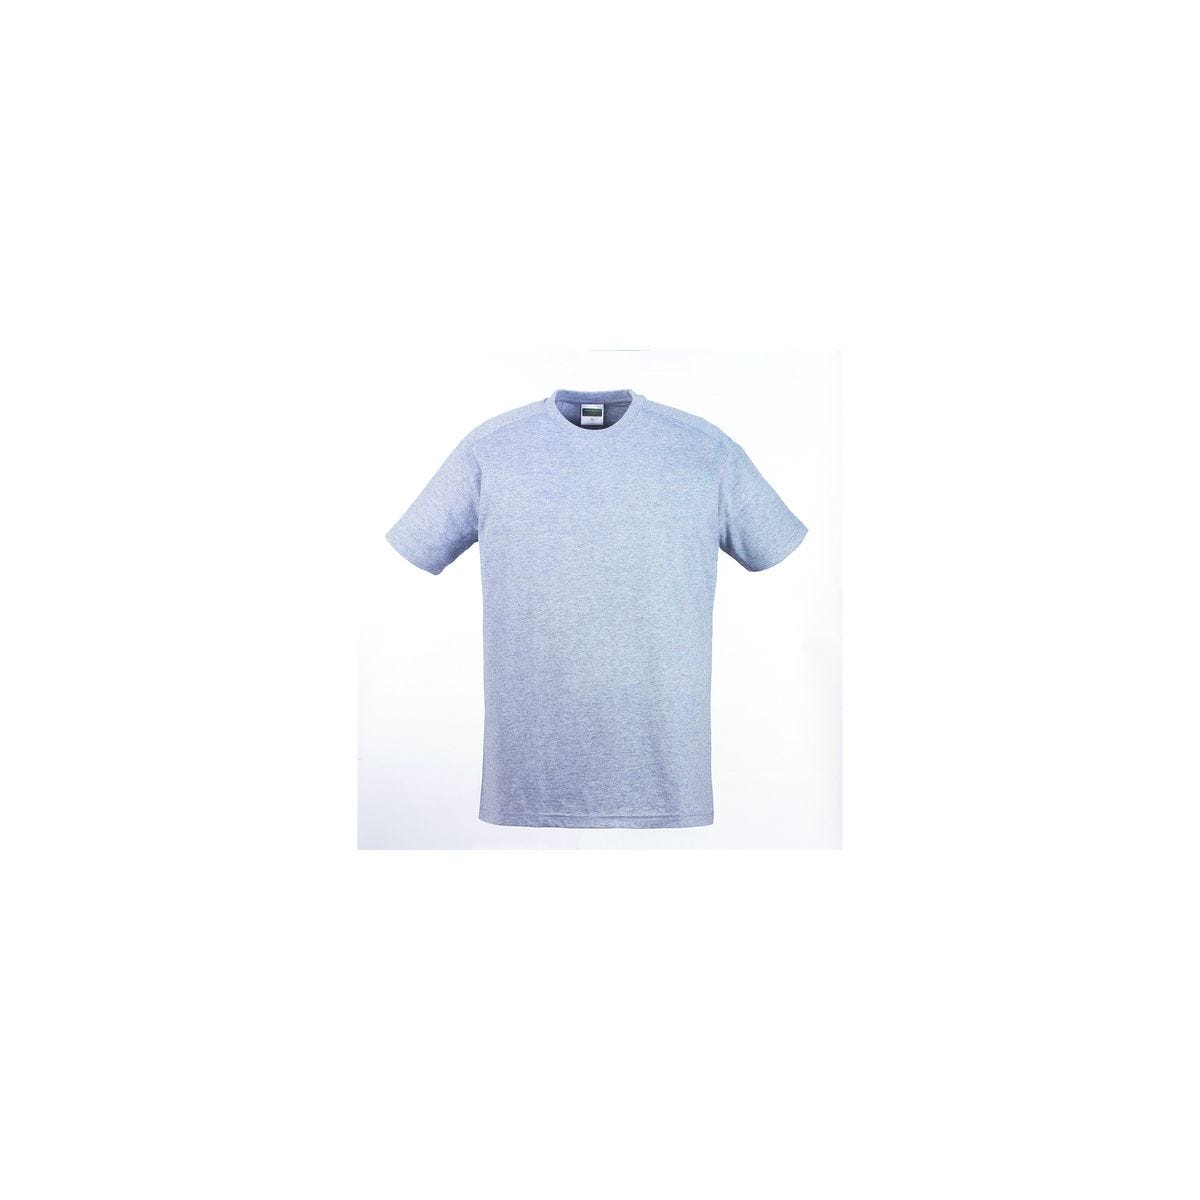 T-shirt TRIP MC gris chiné - COVERGUARD - Taille S 0